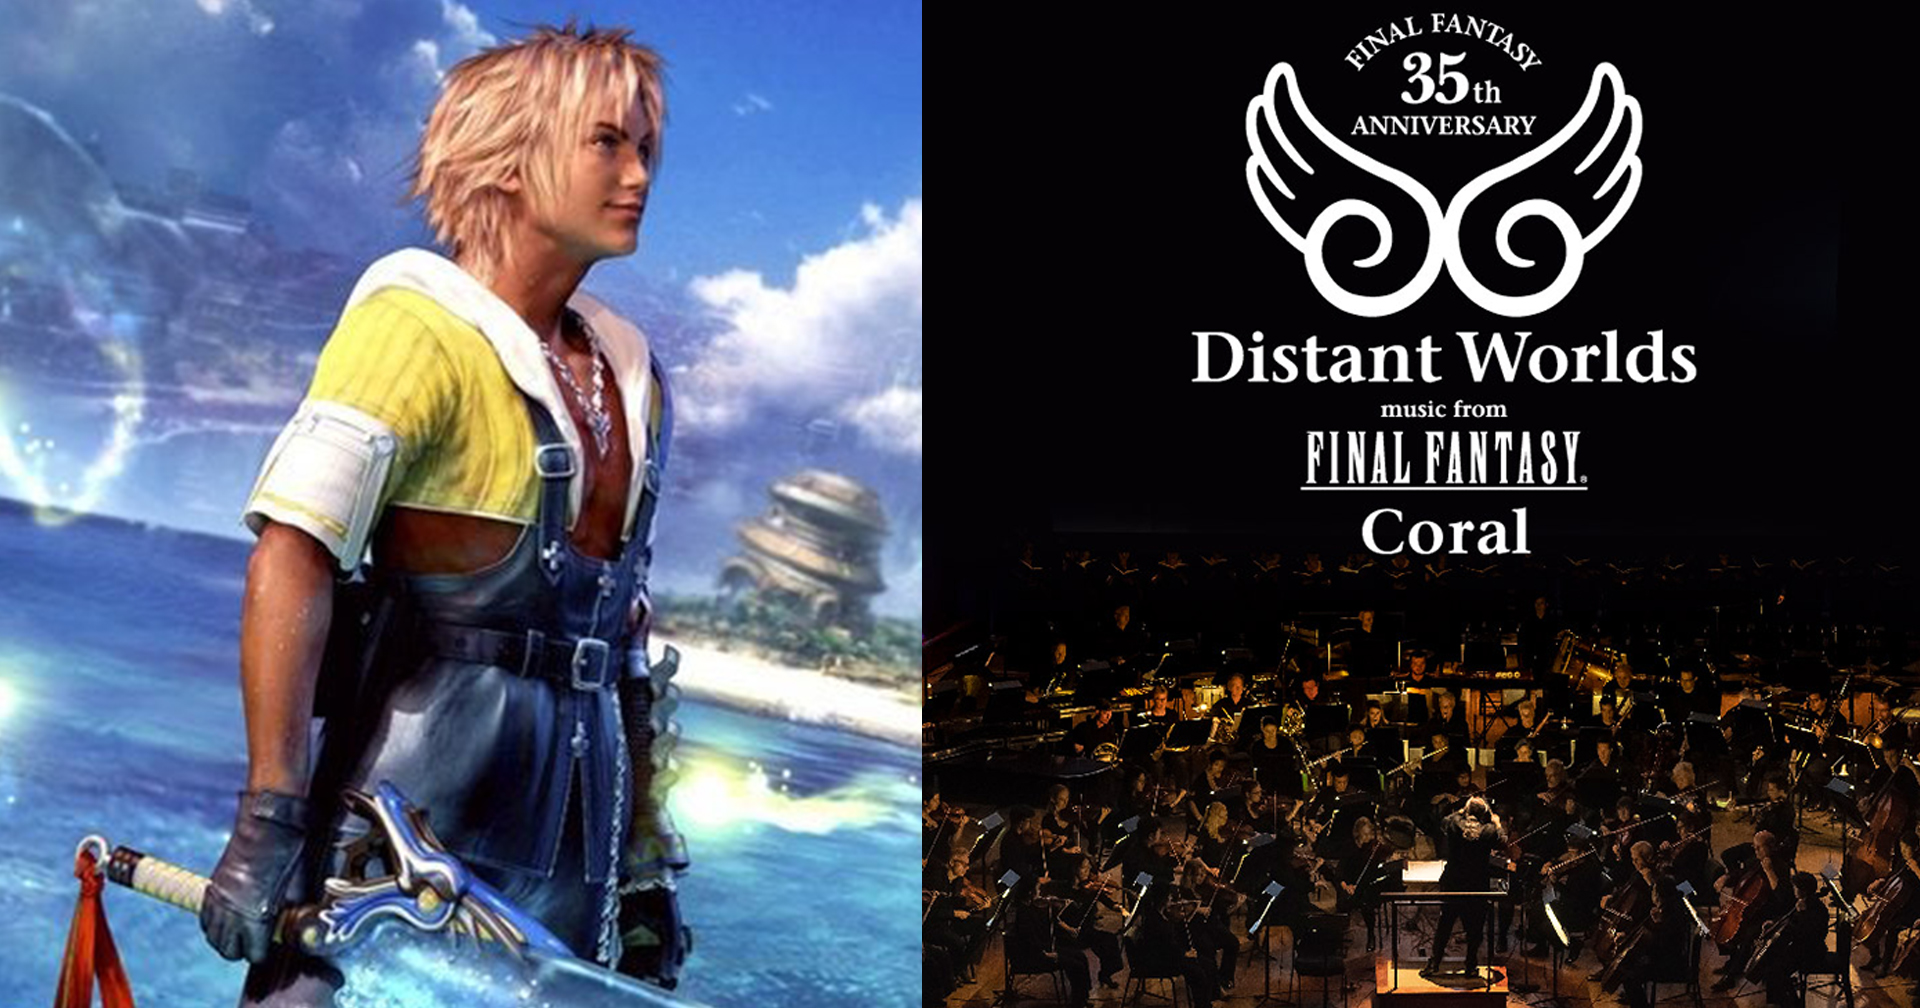 คอนเสิร์ตออร์เคสตรา ฉลองครบรอบ 35 ปี ‘Final Fantasy’ ขนศิลปินต้นฉบับร่วมแสดงเพียบ